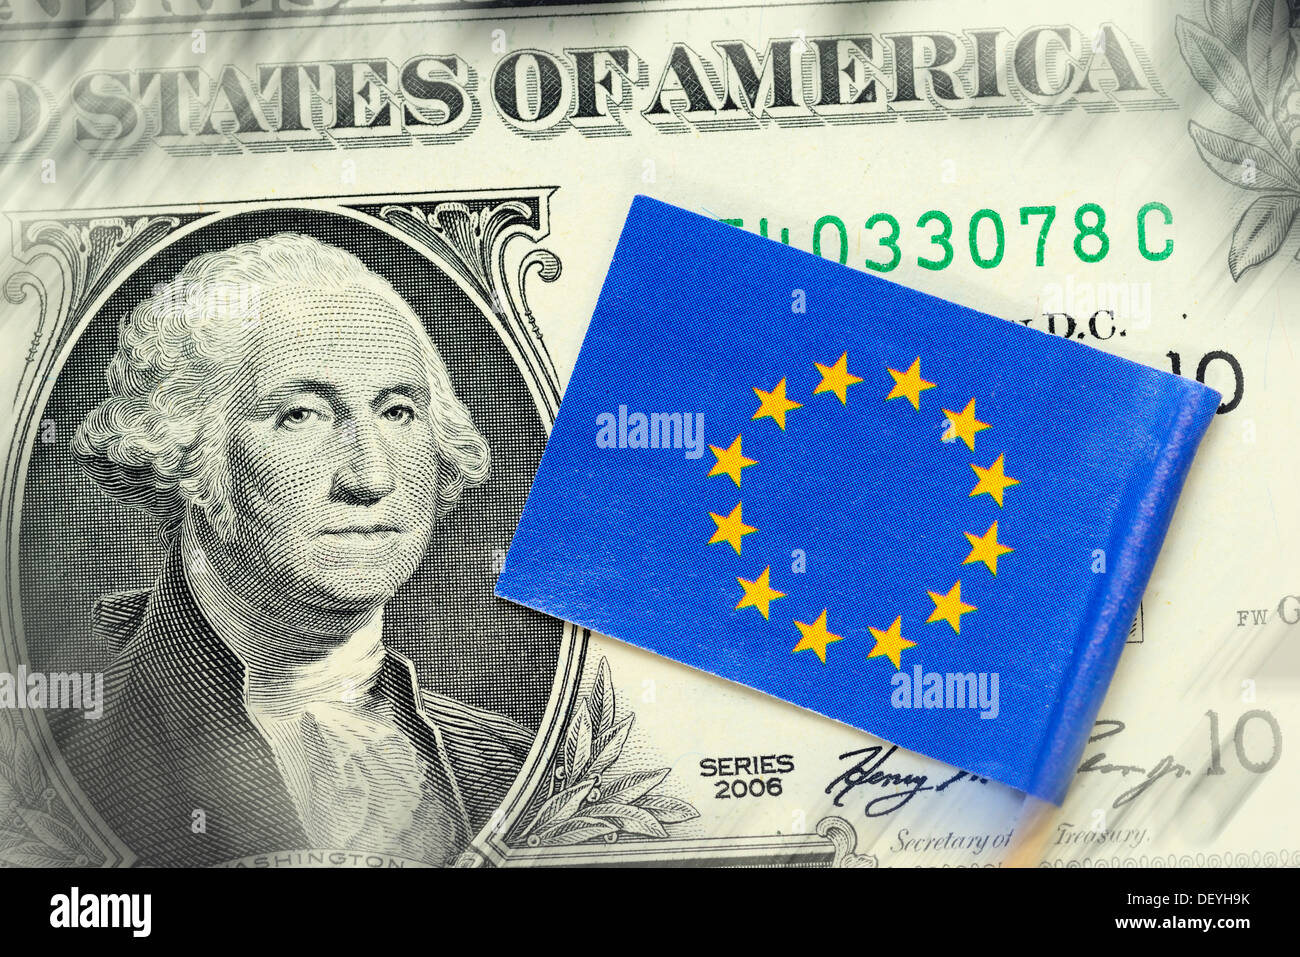 Drapeau de l'Union européenne sur un dollar symbolique, photo zone de commerce extérieur entre les USA et l'UE Banque D'Images